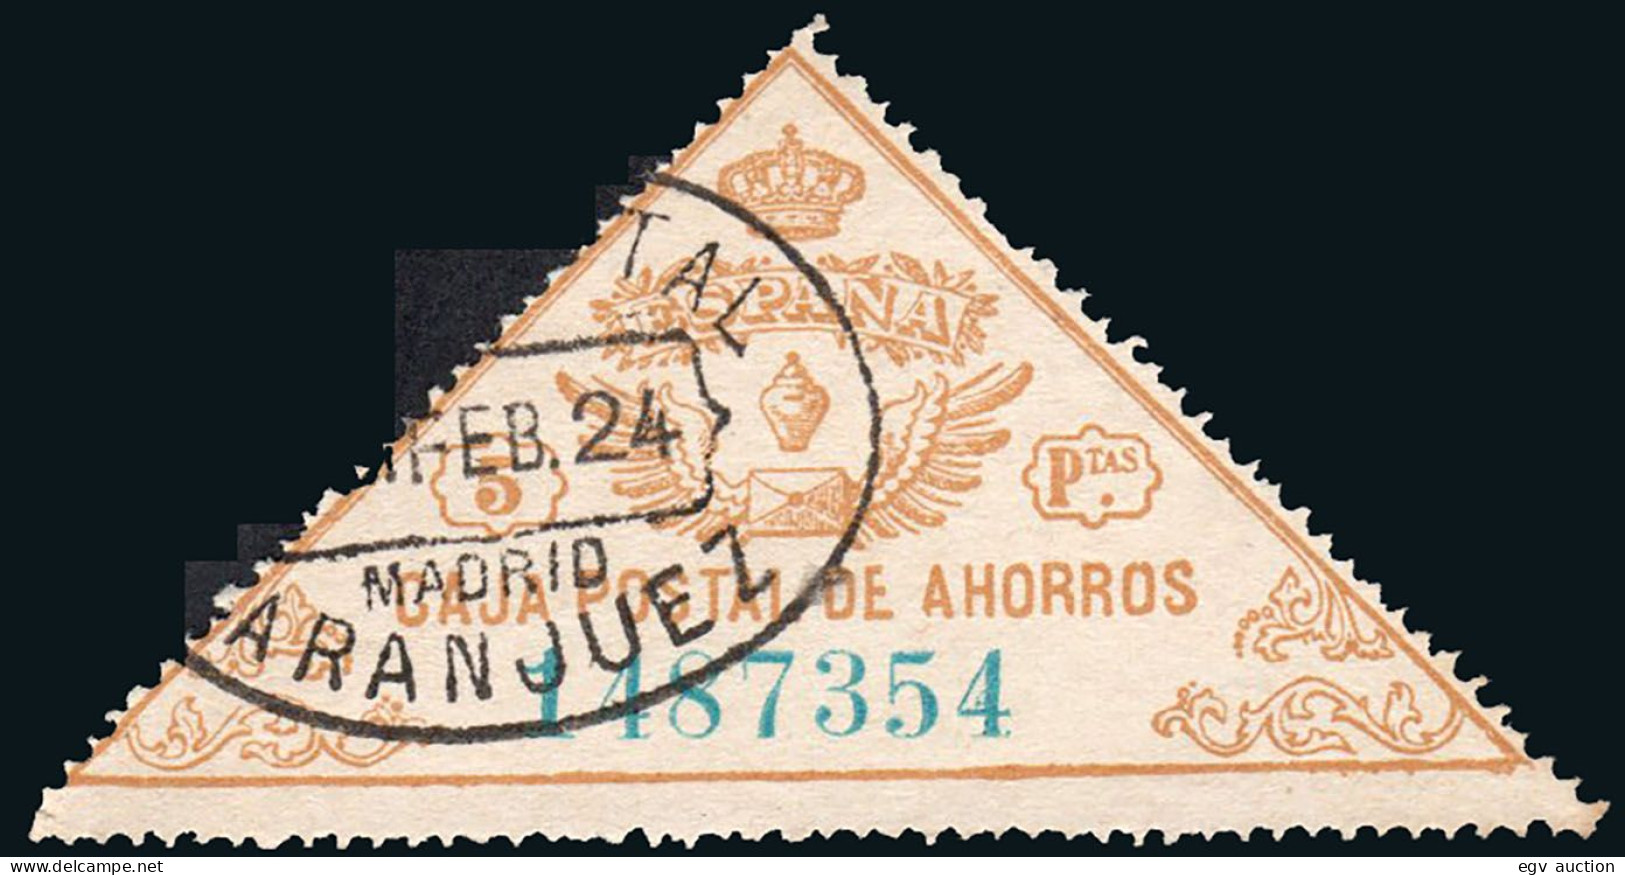 Madrid - Caja Postal Ahorros - Gálvez 5 - Mat "Giro Postal - Aranjuez" - Fiscale Zegels